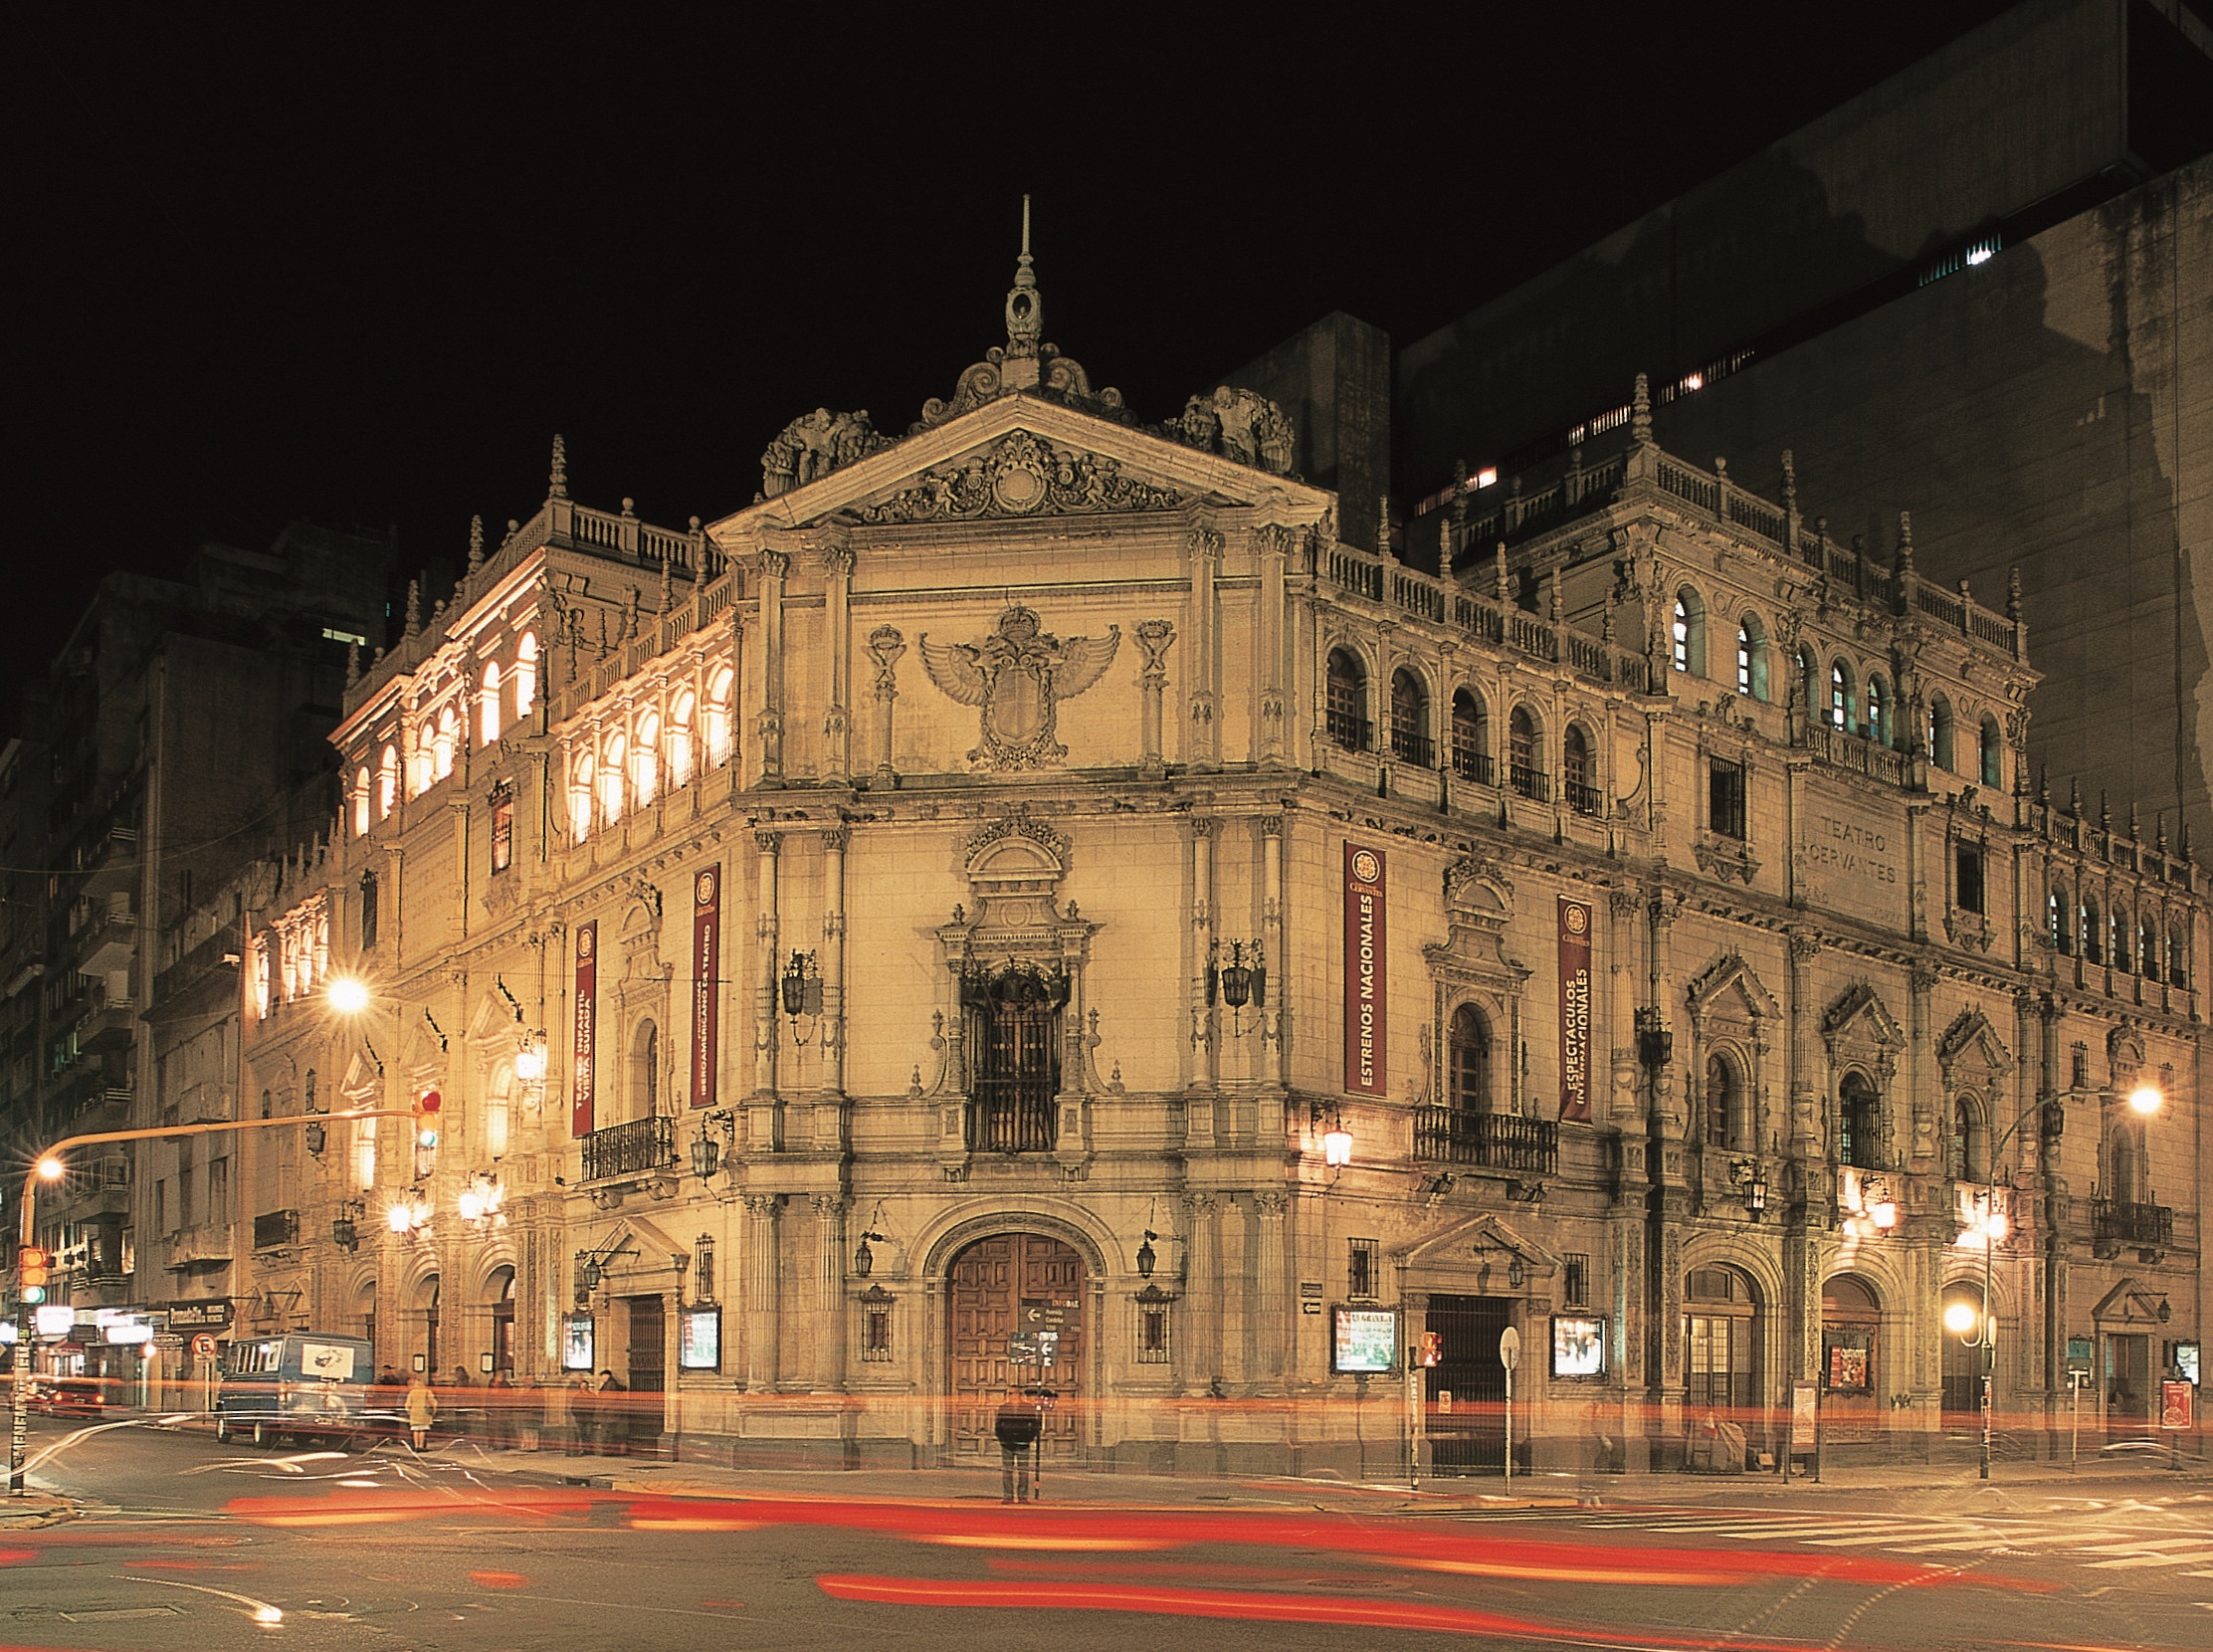 Teatro Nacional Cervantes